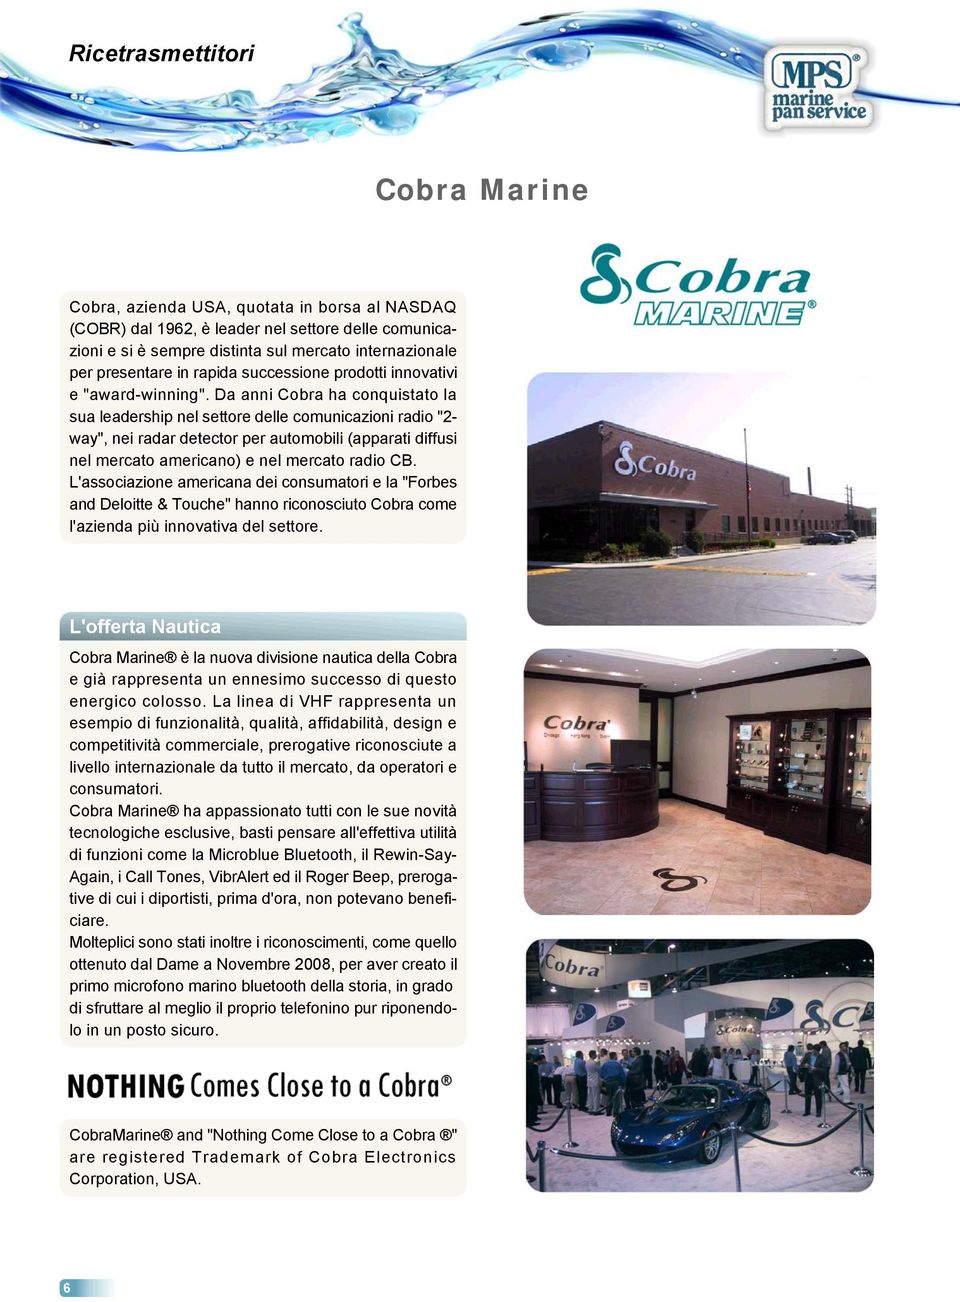 Da anni Cobra ha conquistato la sua leadership nel settore delle comunicazioni radio "2- way", nei radar detector per automobili (apparati diffusi nel mercato americano) e nel mercato radio CB.